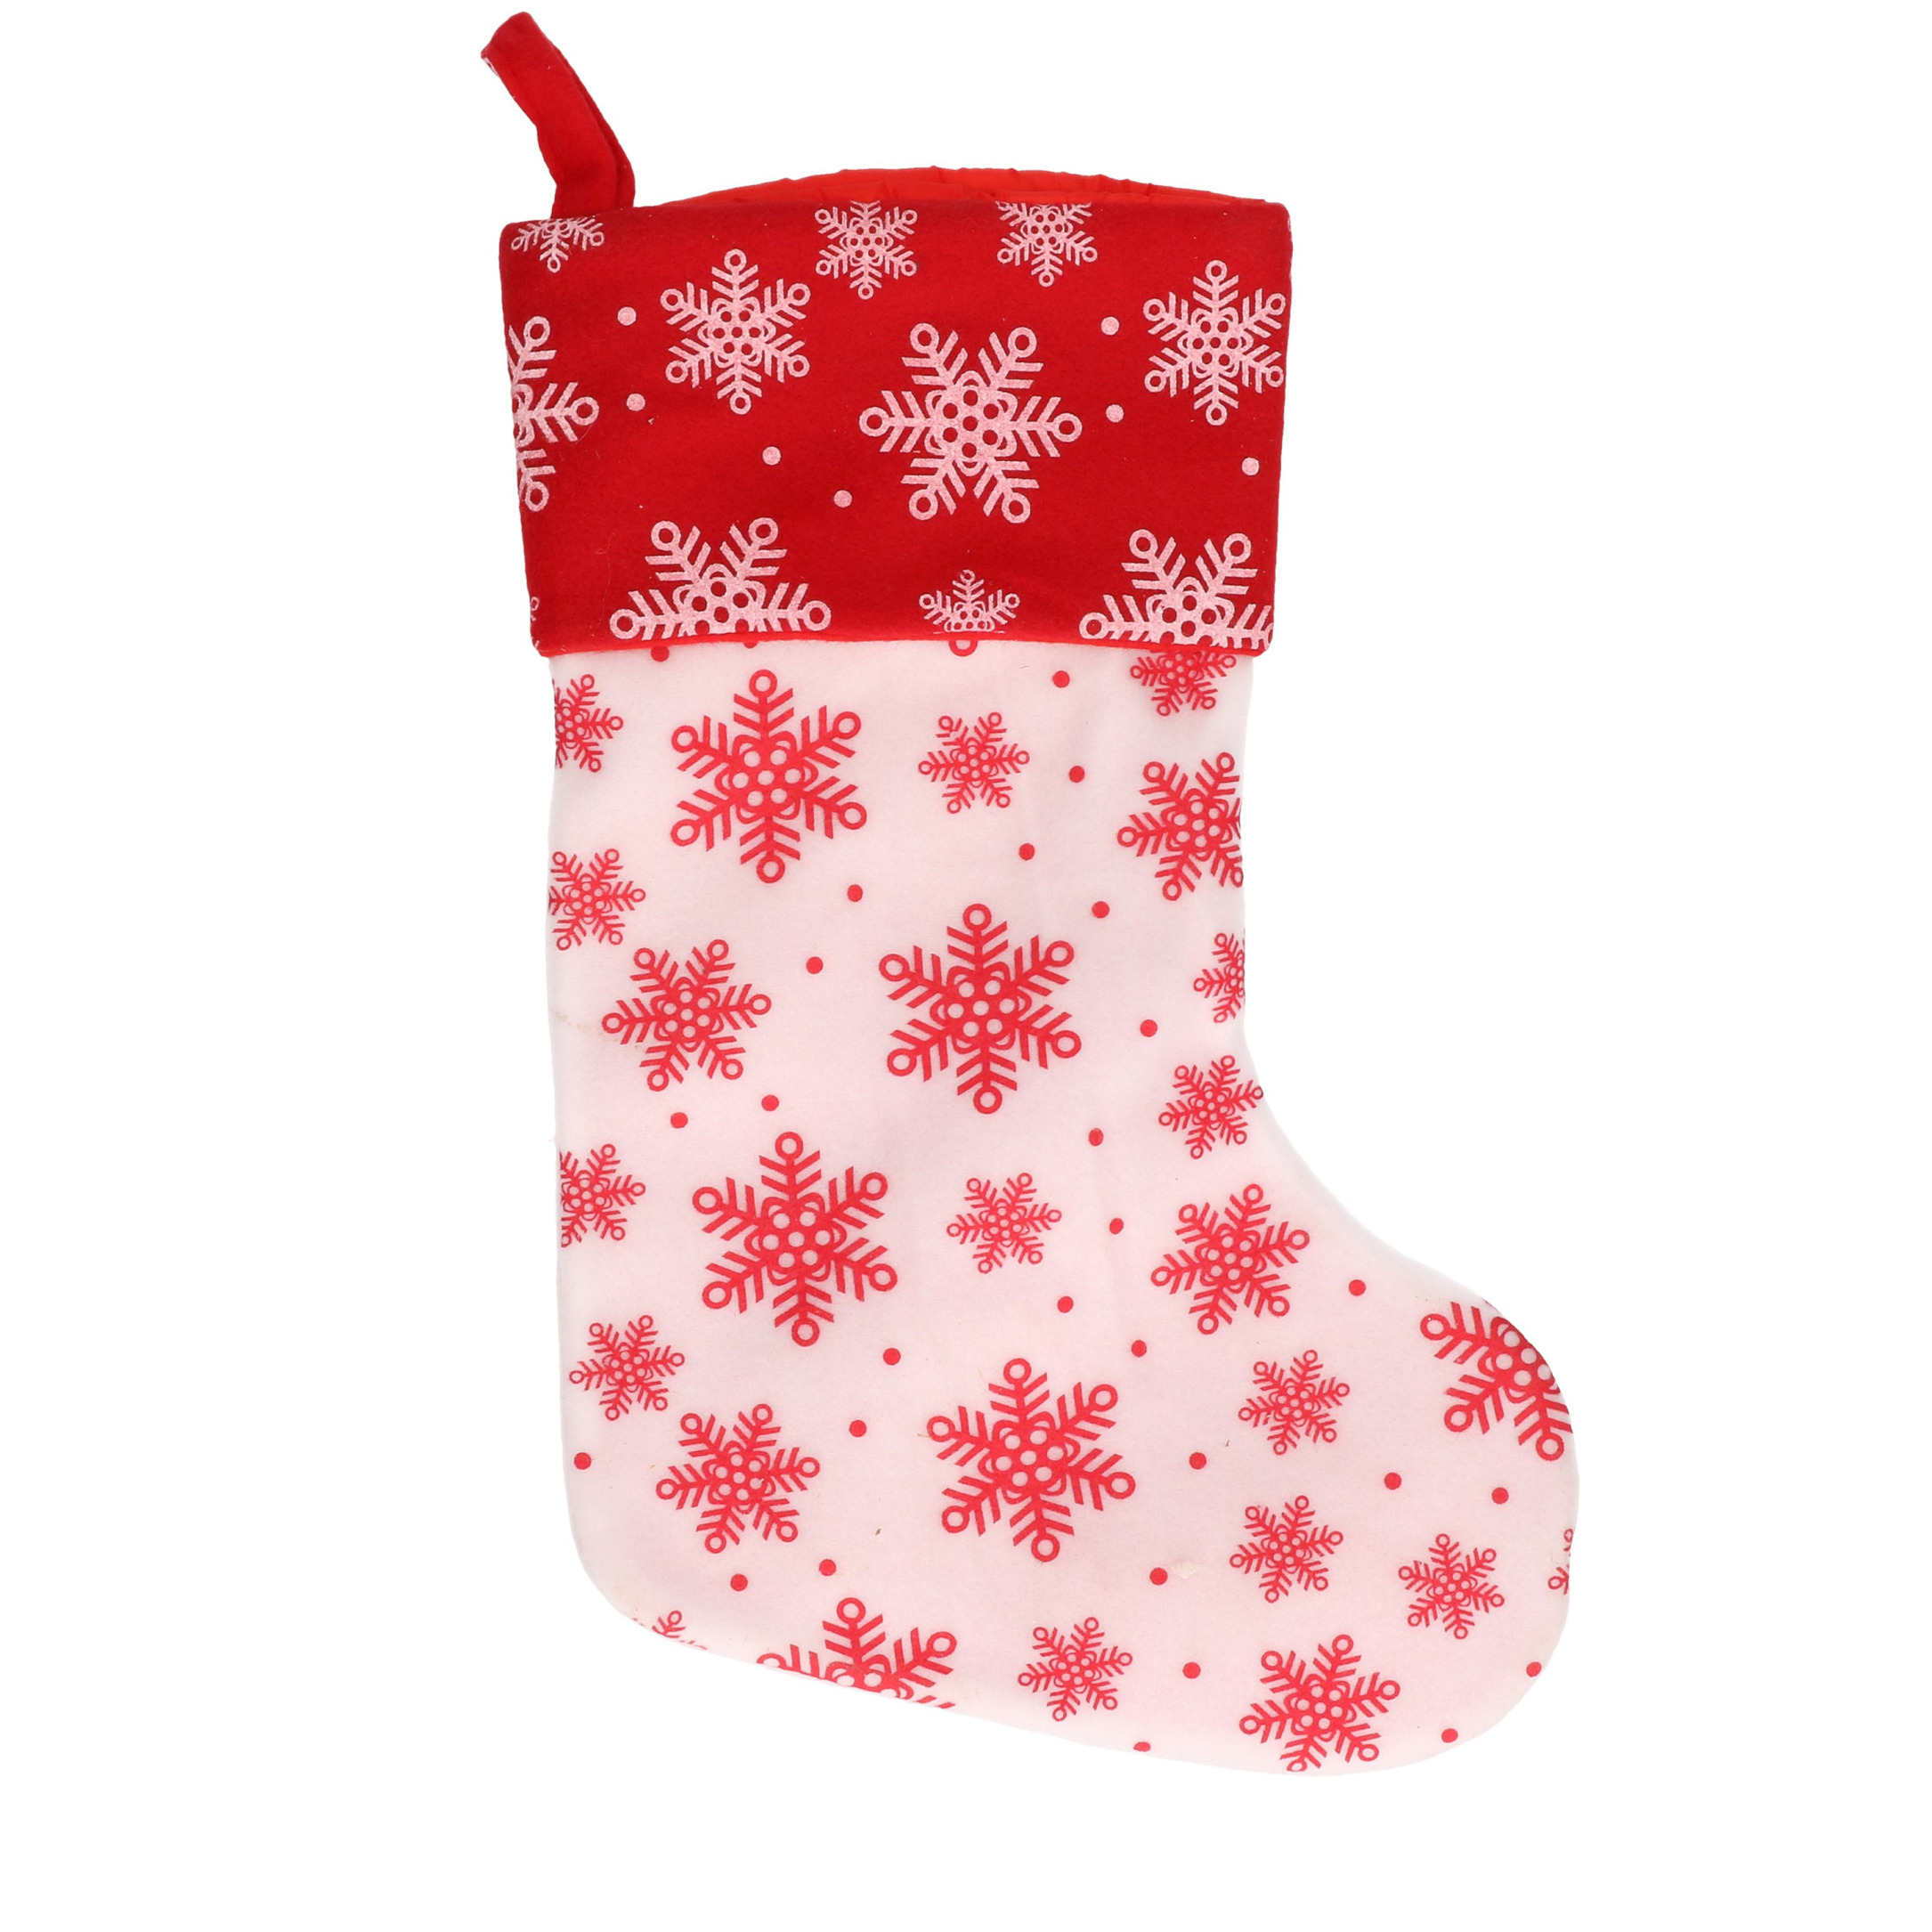 1x Wit-rode kerstsokken met sneeuwvlokken print 40 cm